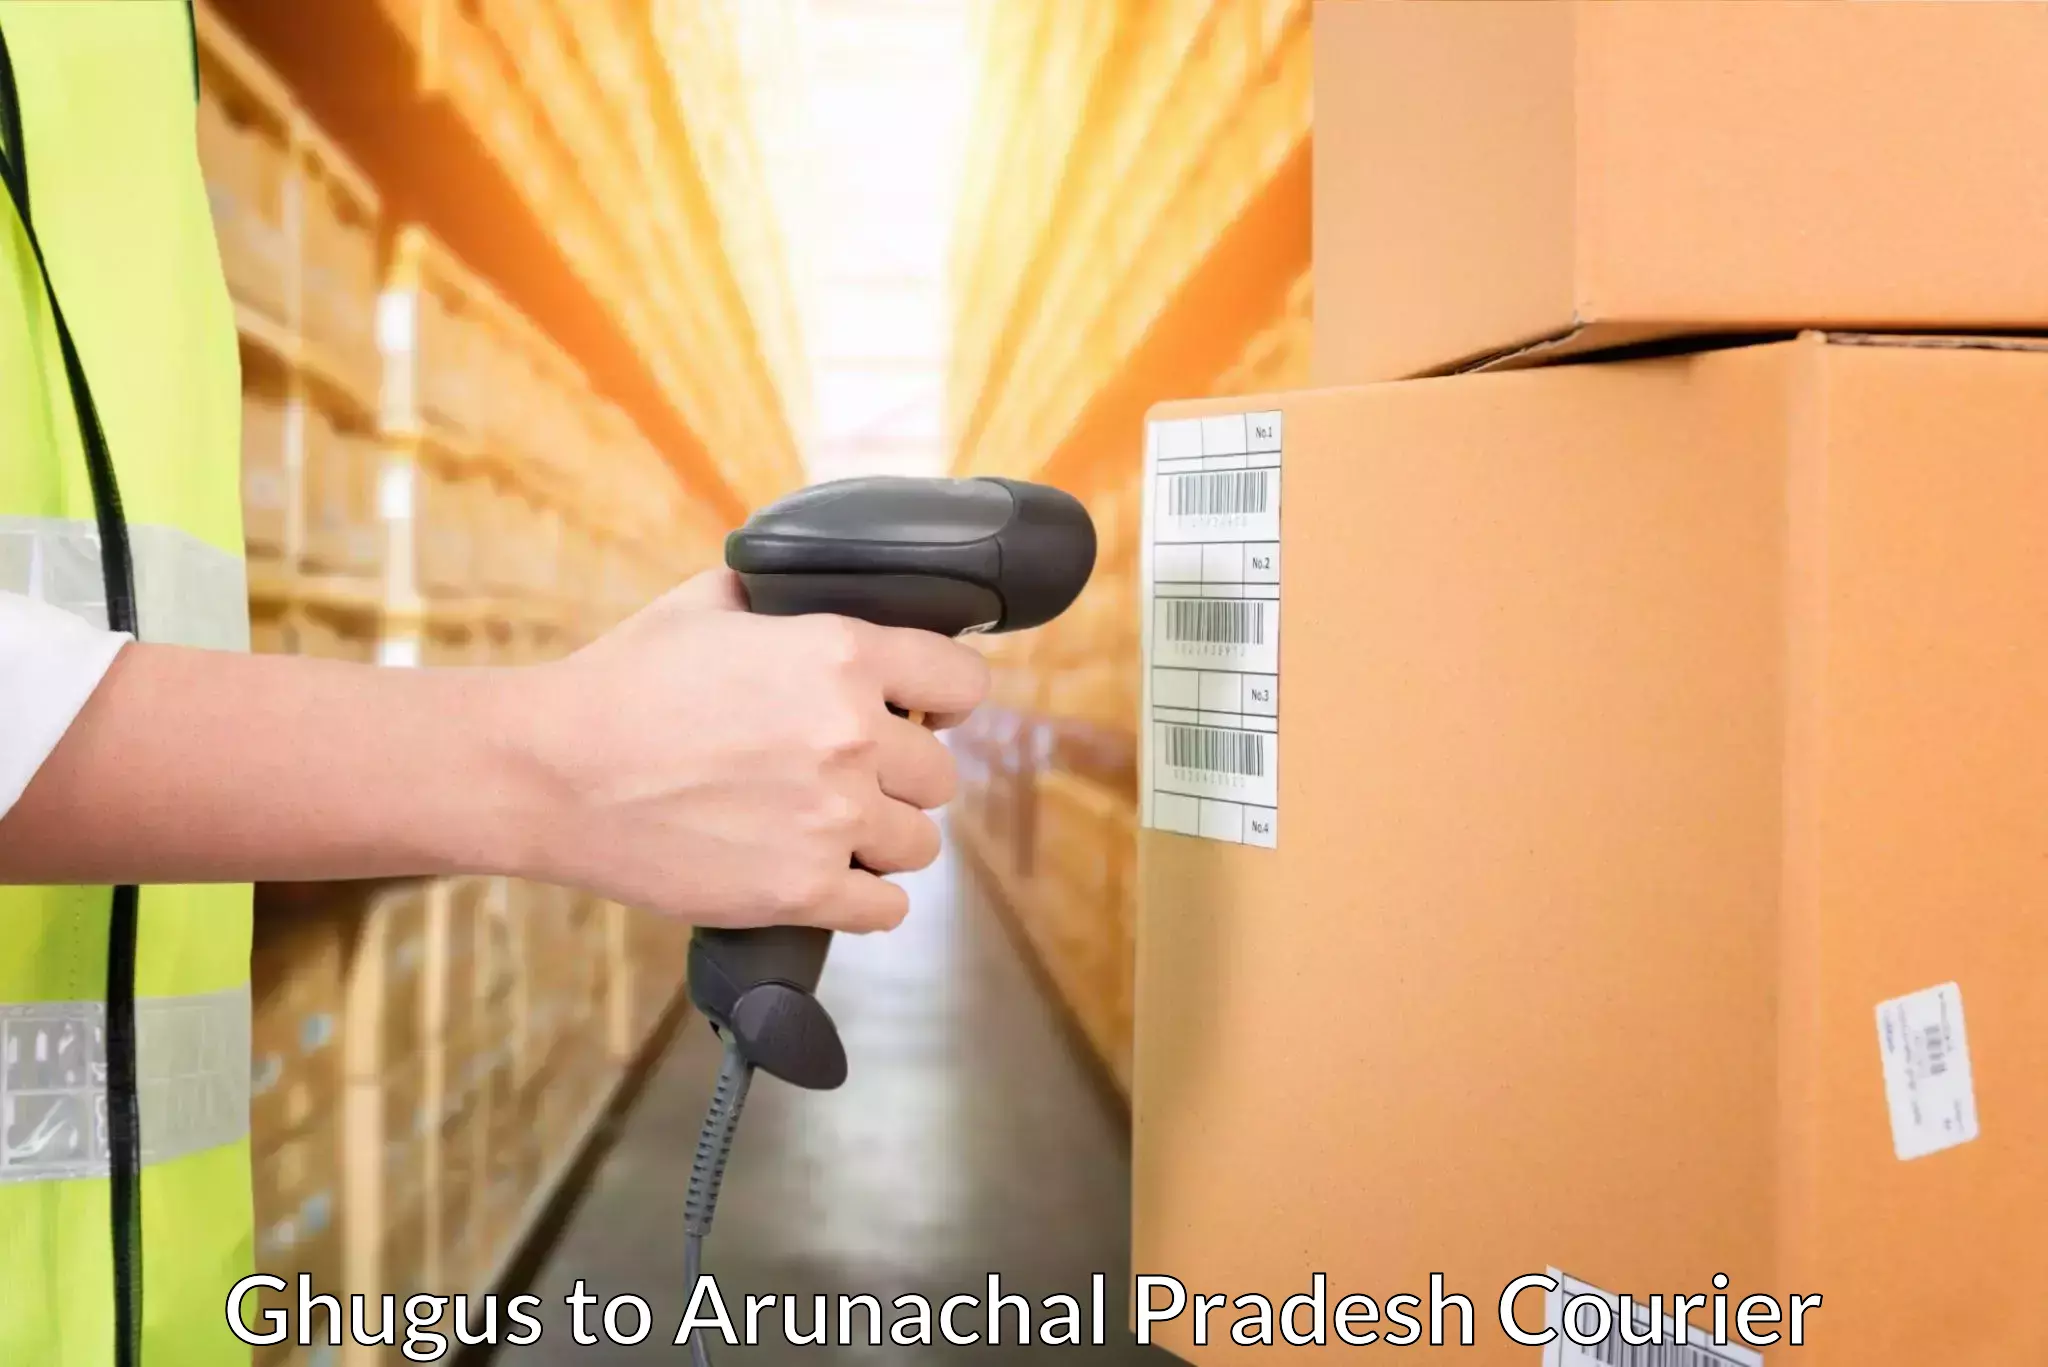 Courier service comparison Ghugus to Arunachal Pradesh